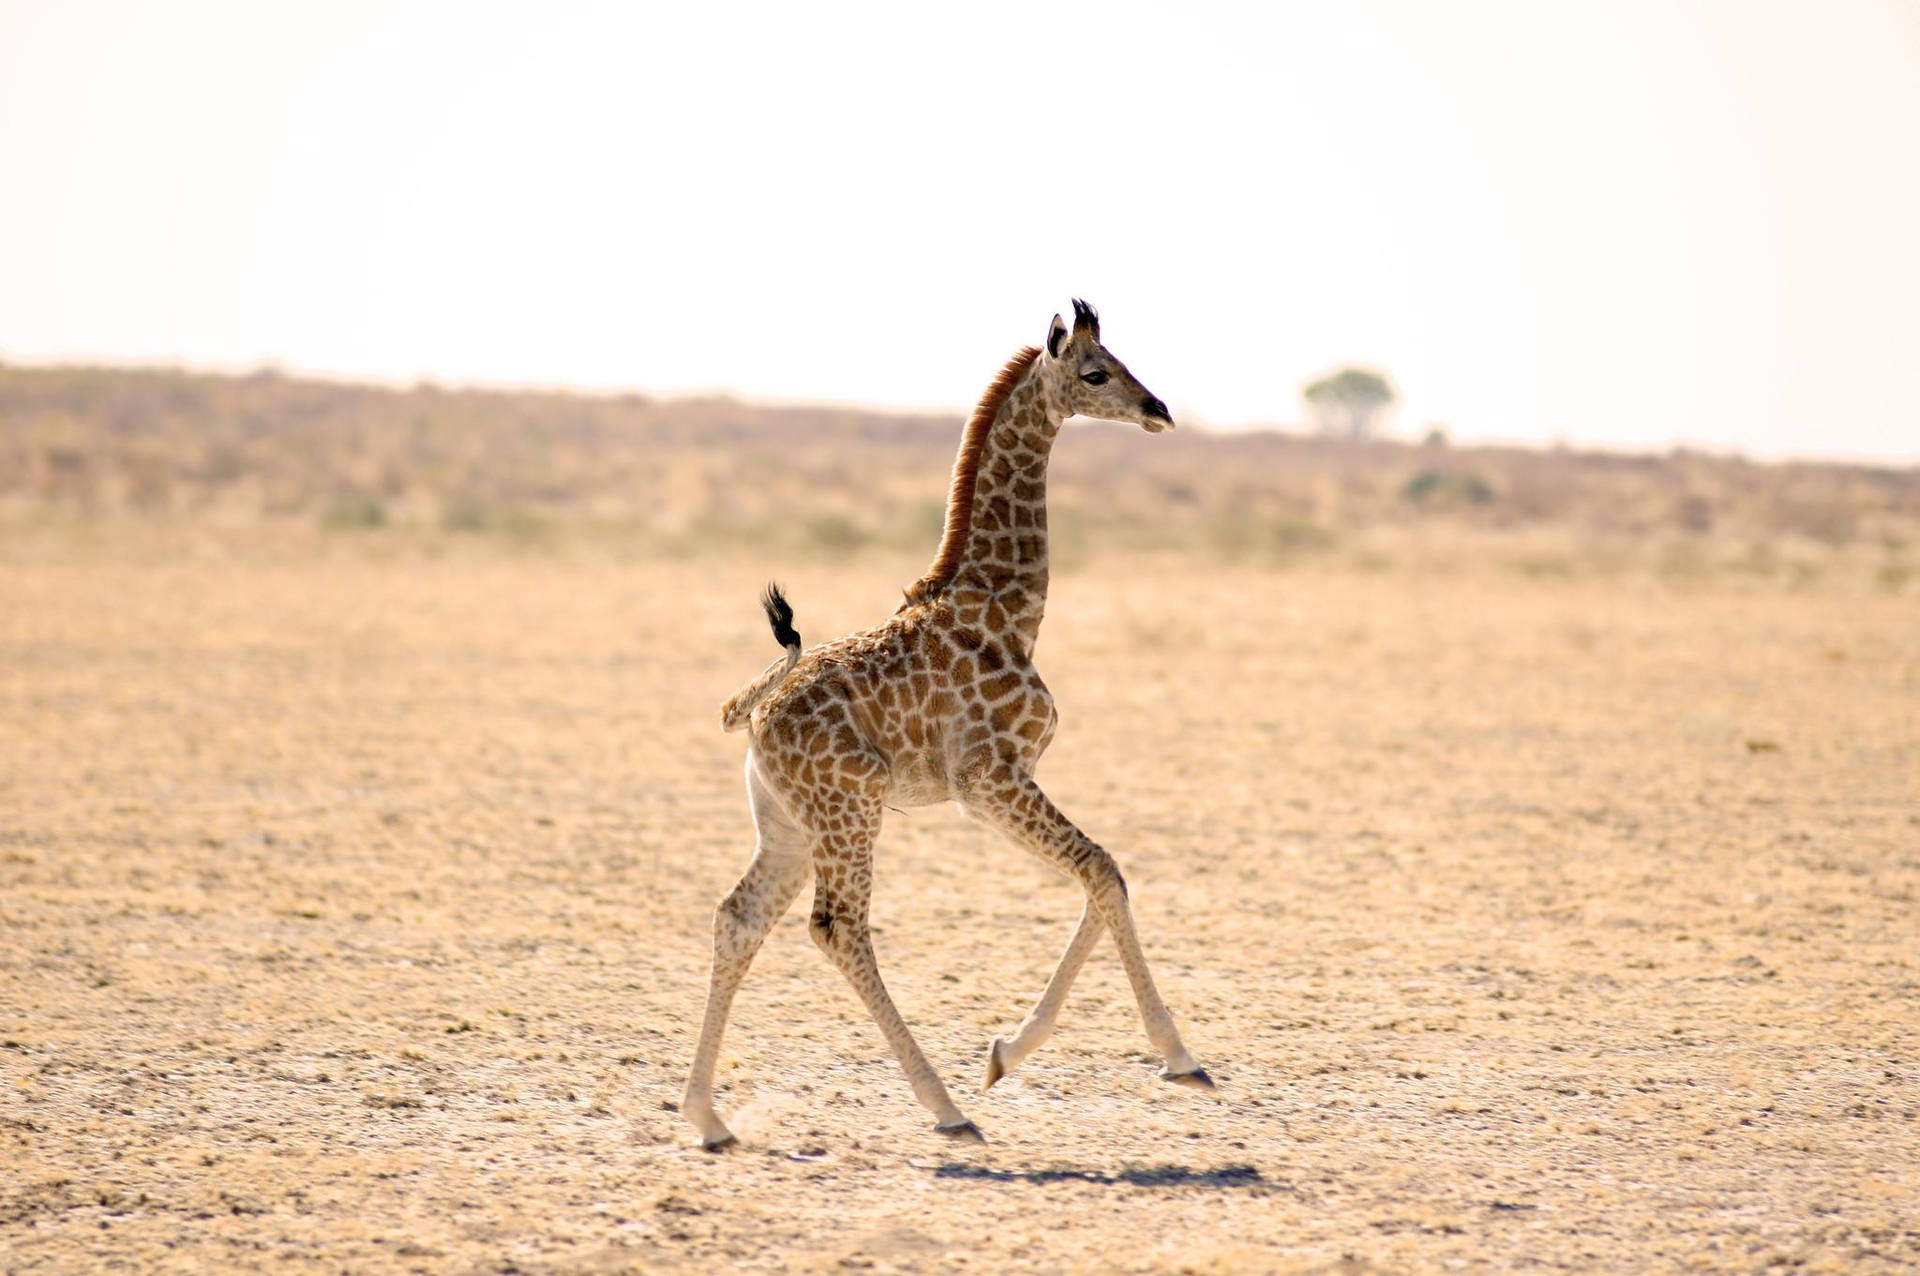 Baby Giraffe In The Field Wallpaper